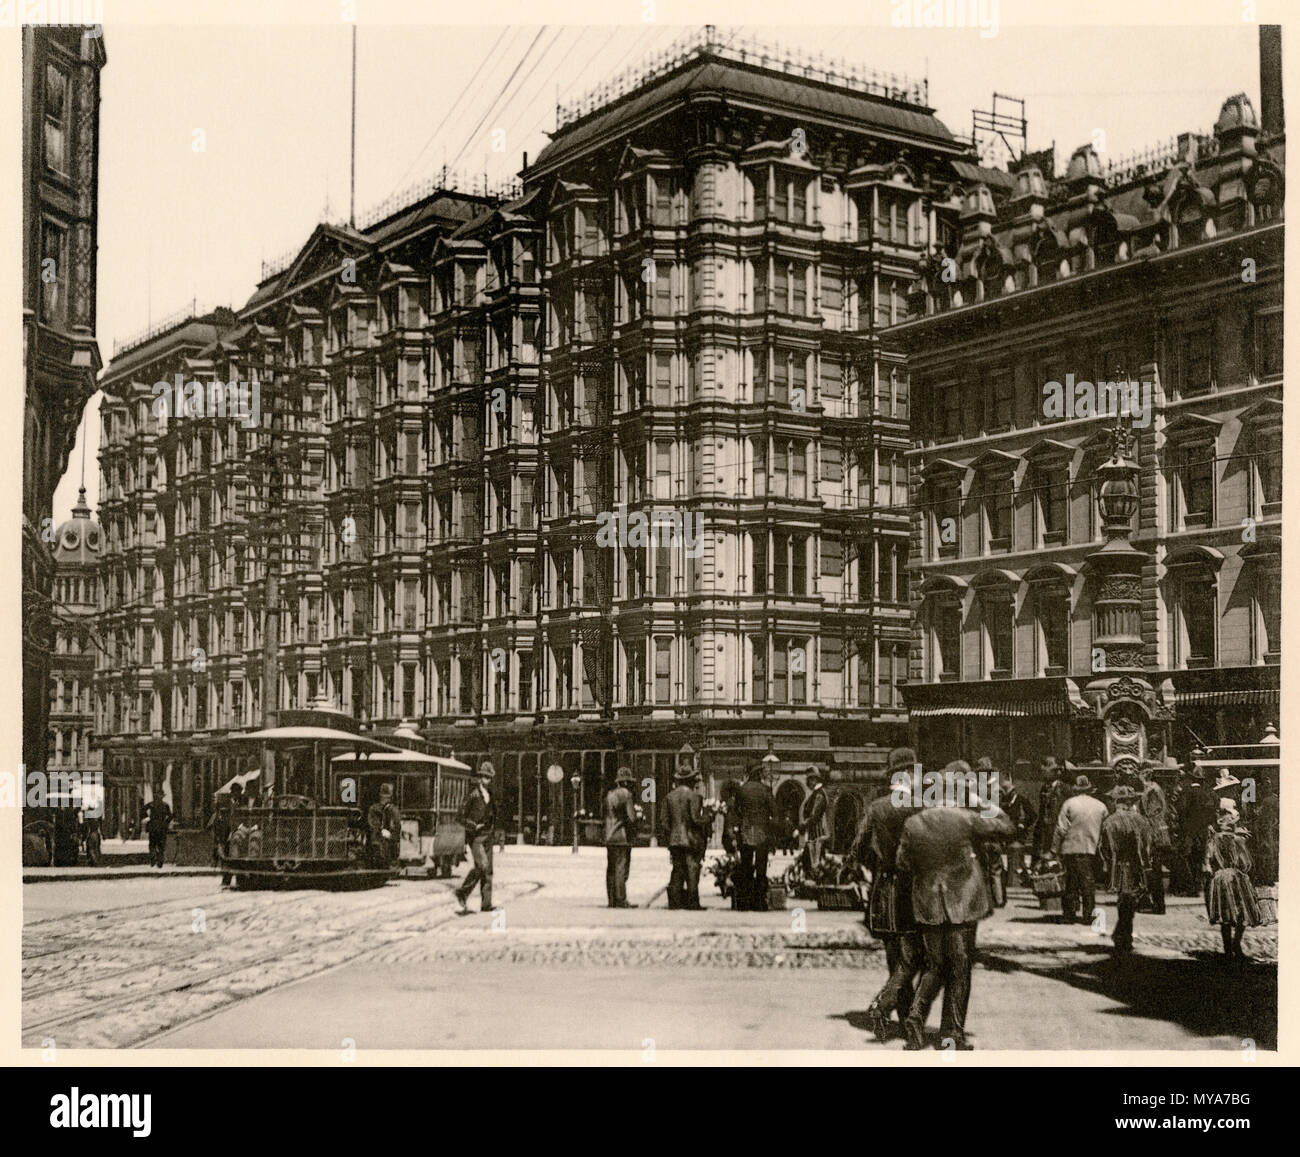 Palace Hotel dans le centre-ville de San Francisco, 1890. Albertype (photographie) Banque D'Images